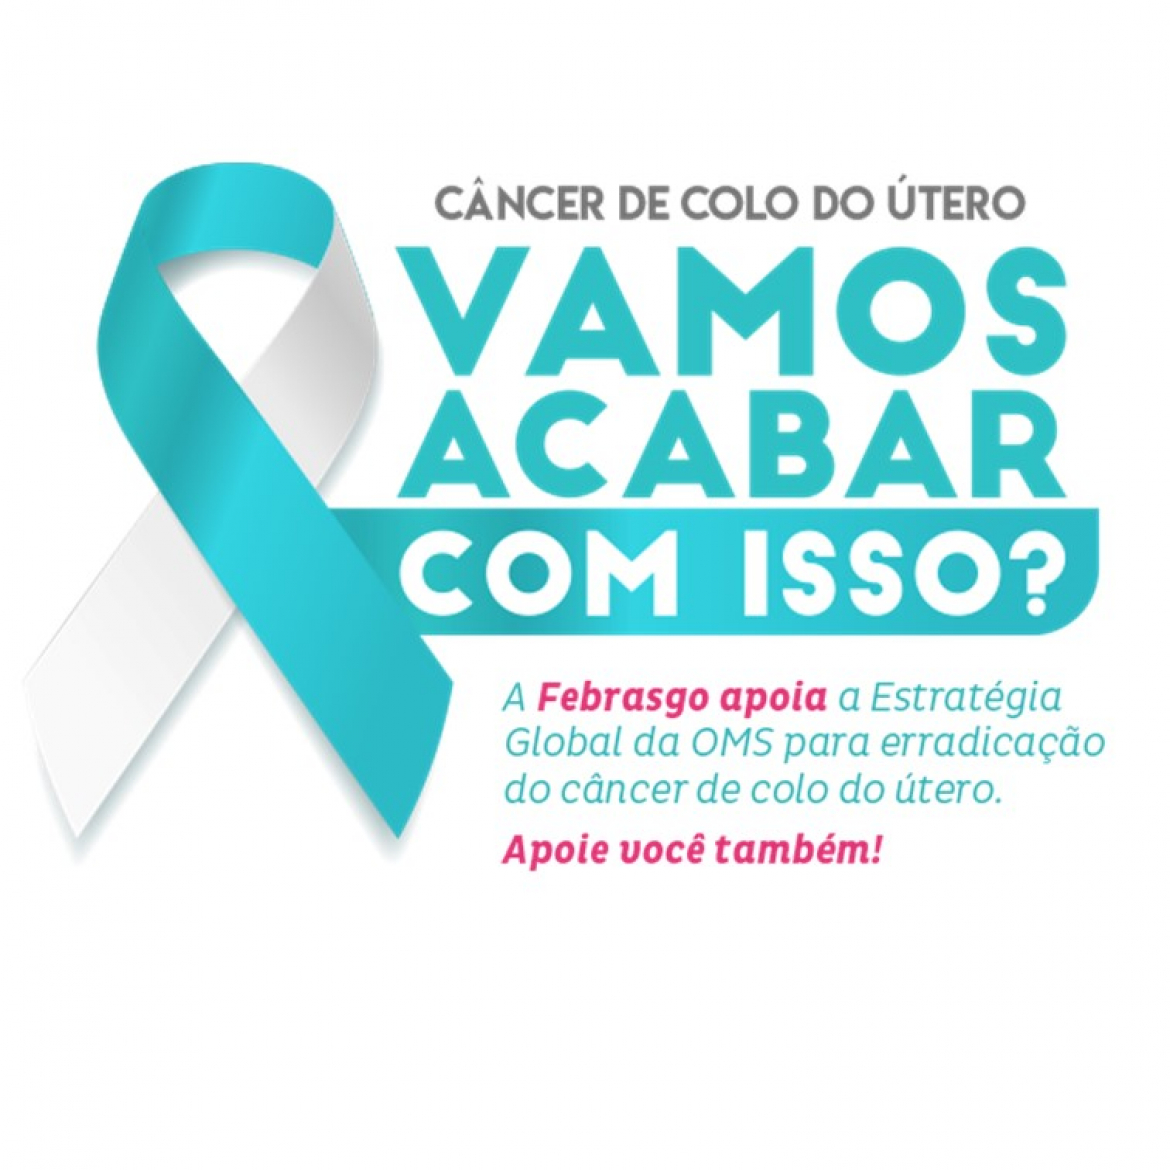 Presidente da Febrasgo aborda estratégia de Eliminação do Câncer de Colo do Útero